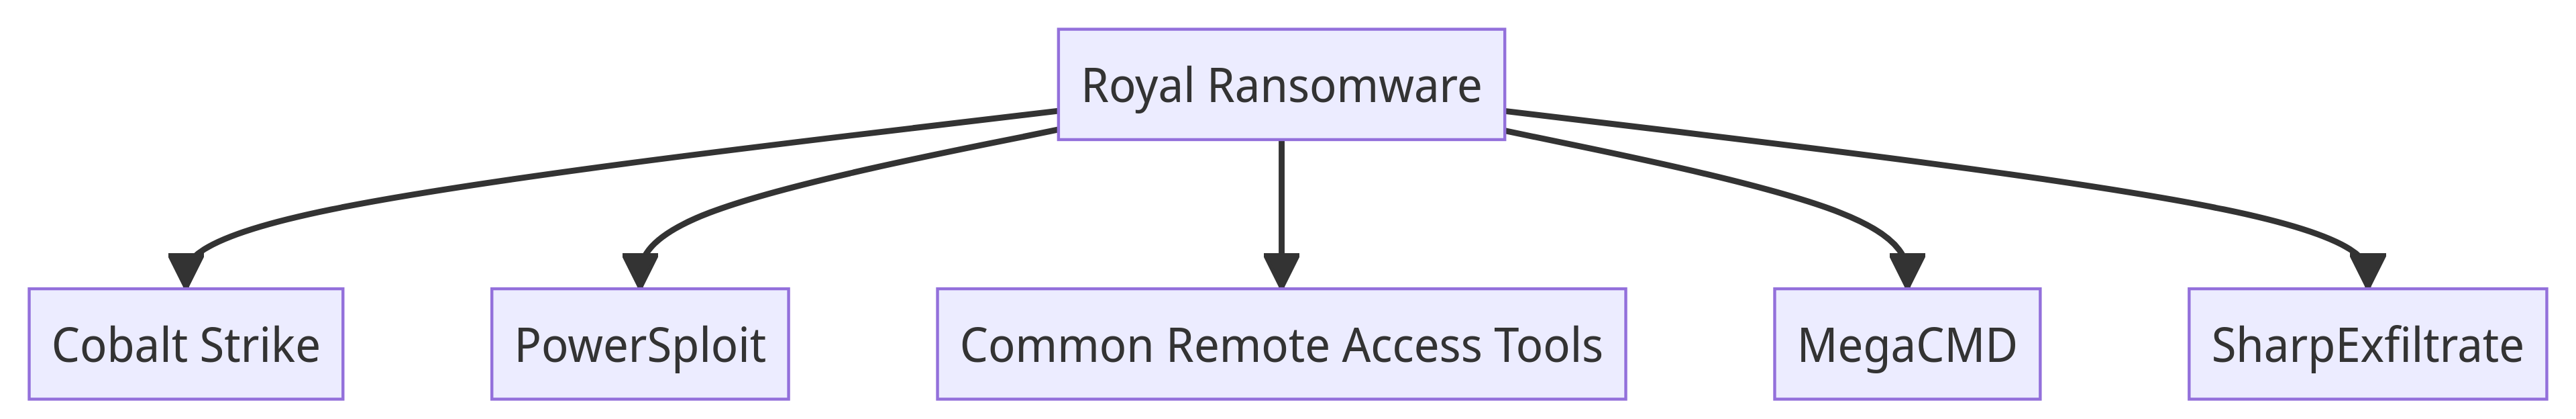 Royal Ransomware Tools